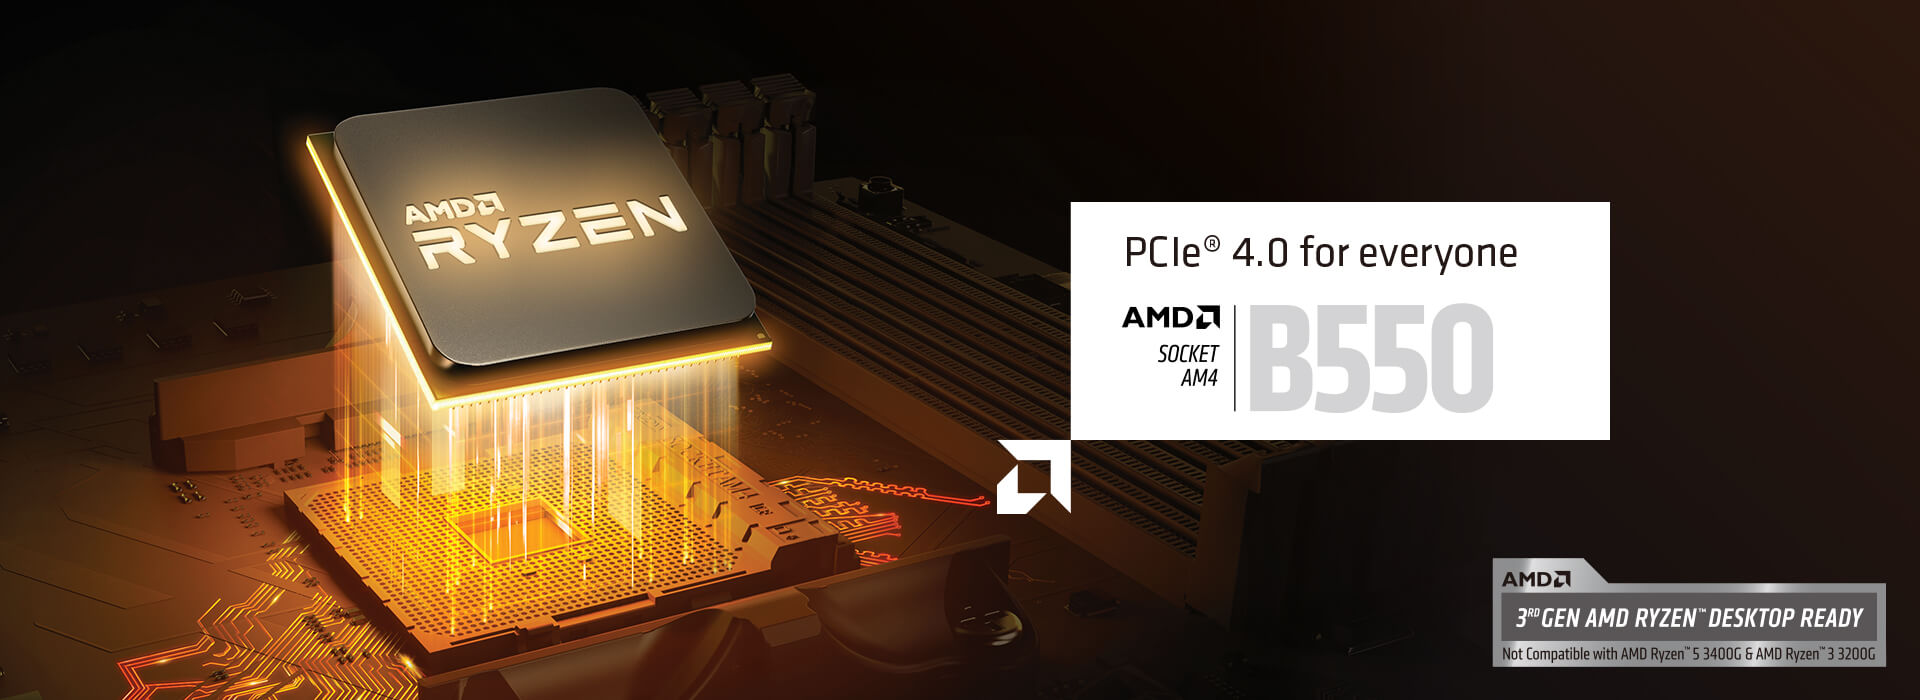 為所有人提供 PCIe 4.0。AMD SOCKET AM$ B550。支援第 3 代 AMD RYZEN DESKTOP。不相容於 AMD Ryzen 5 3400G 及 AMD Ryzen 3 3200G。